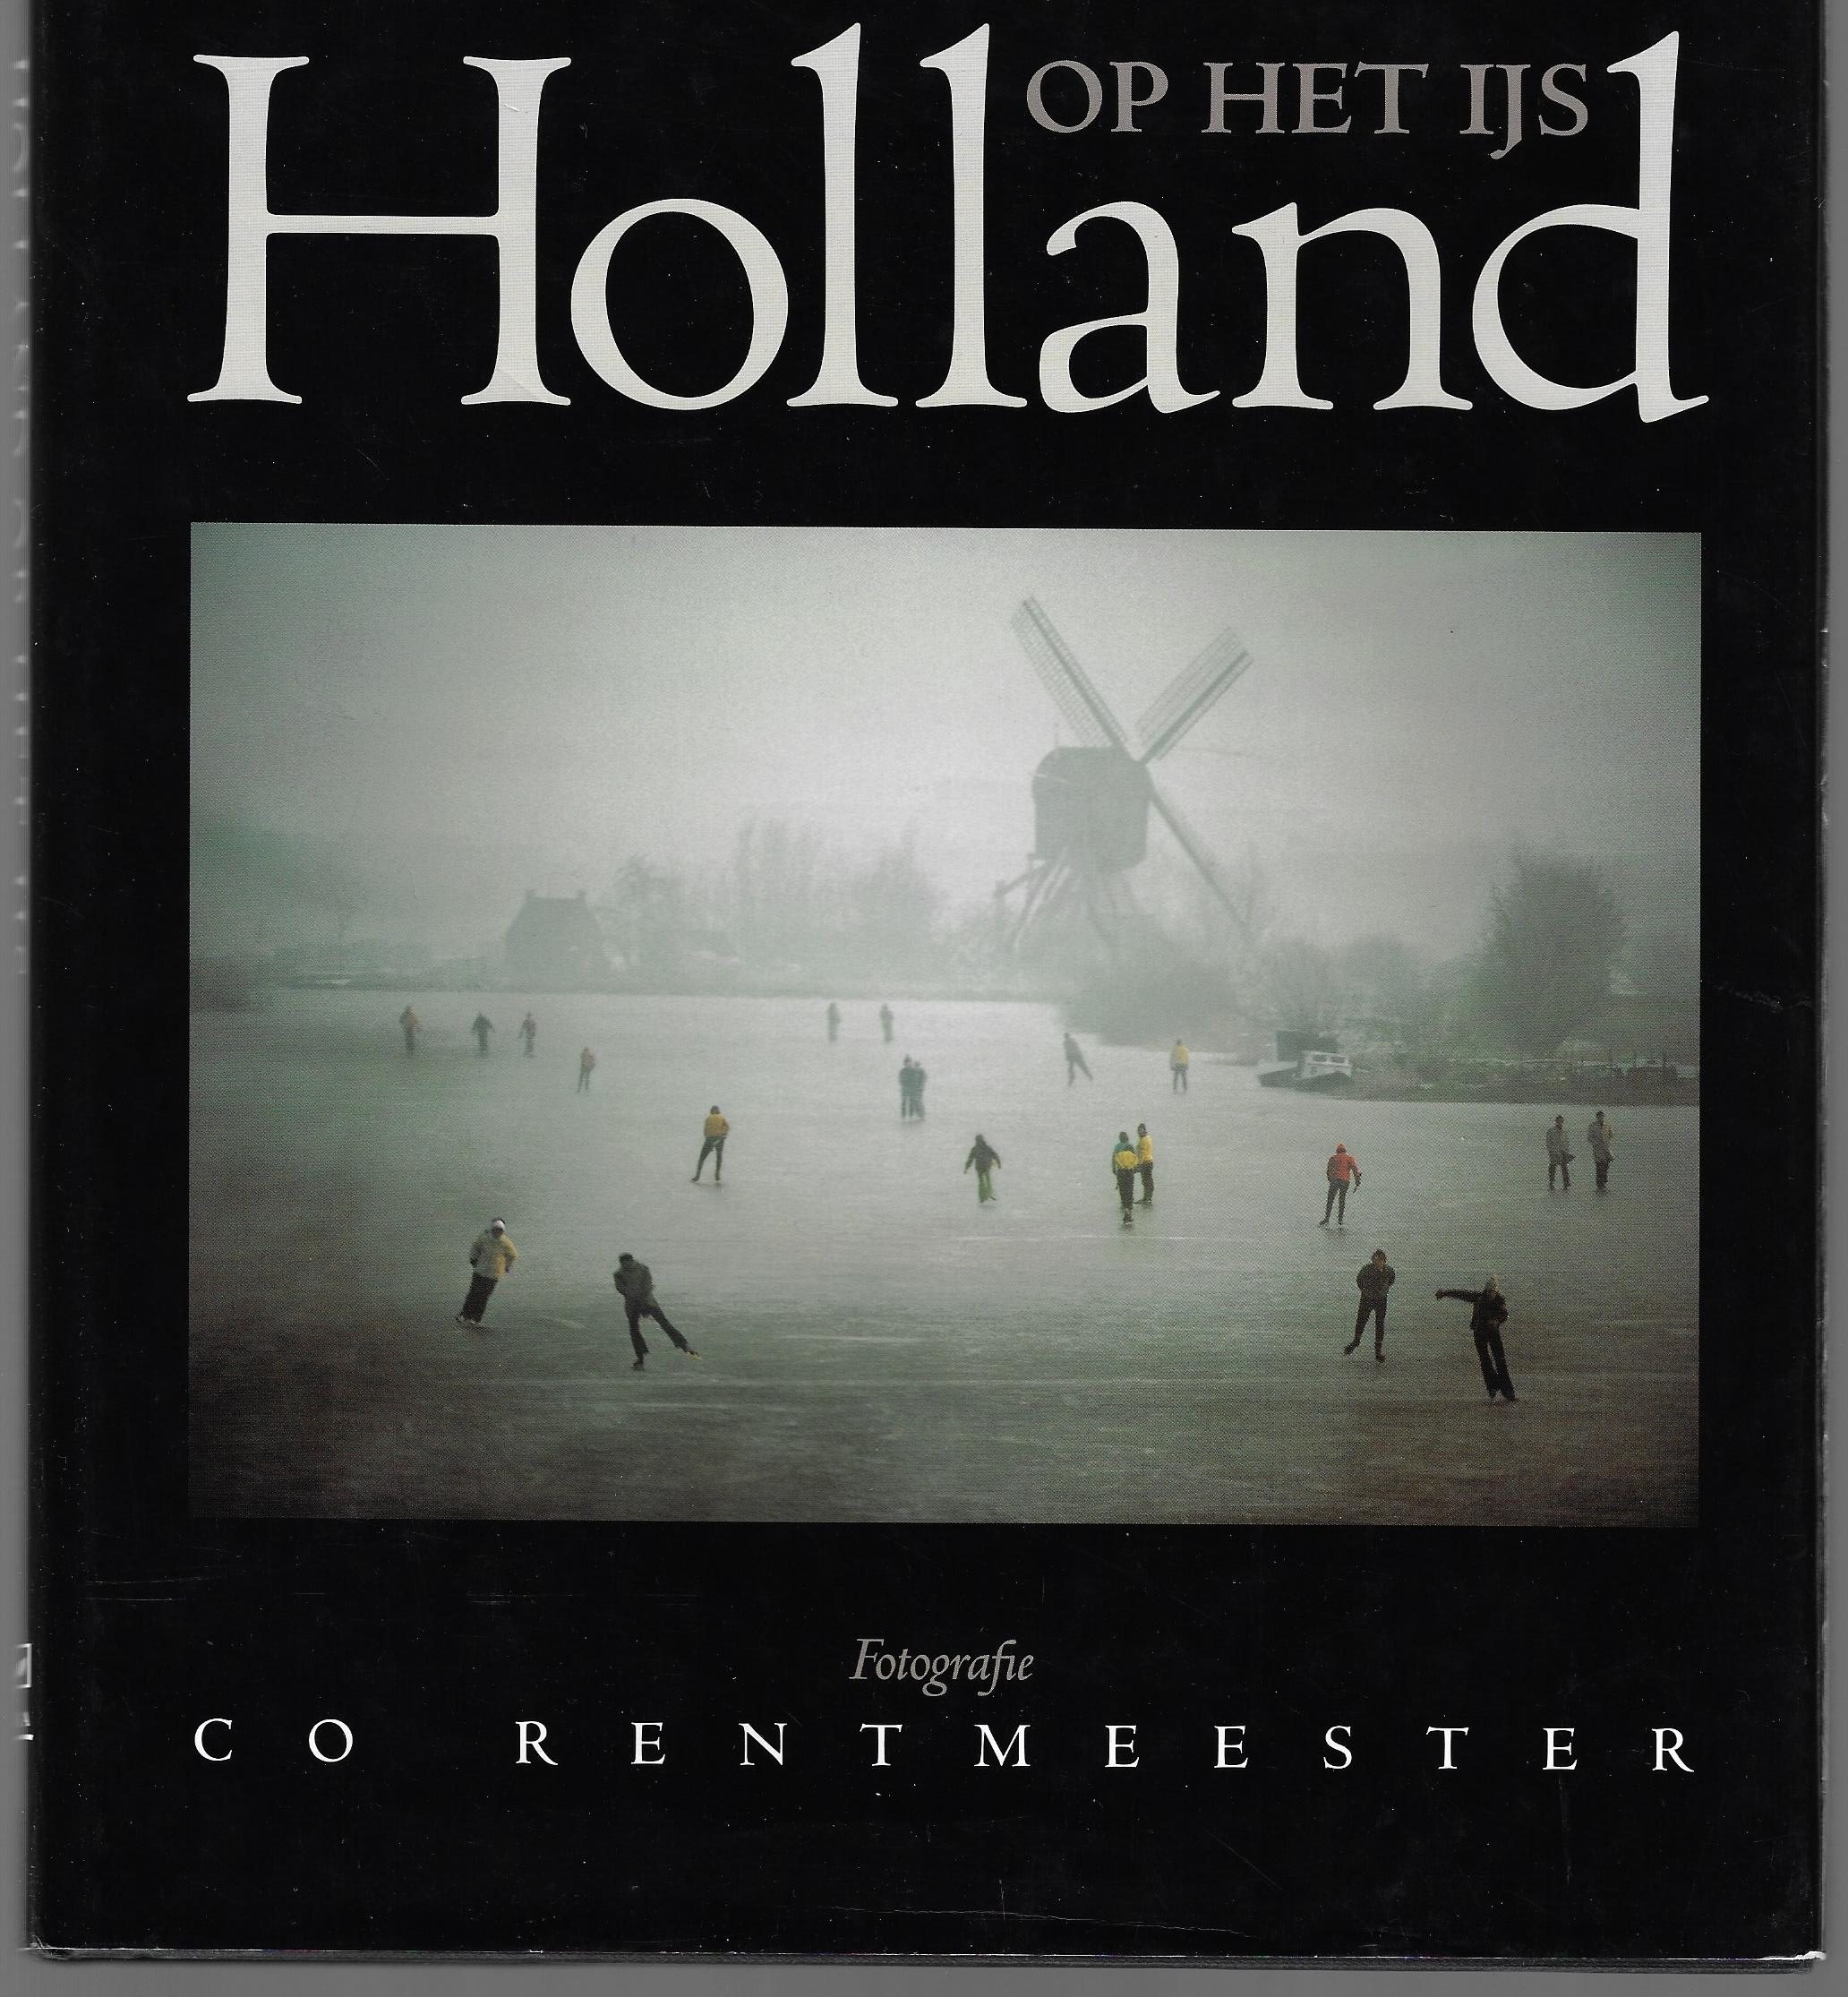 Couwenhoven, Ron - Holland op het ijs